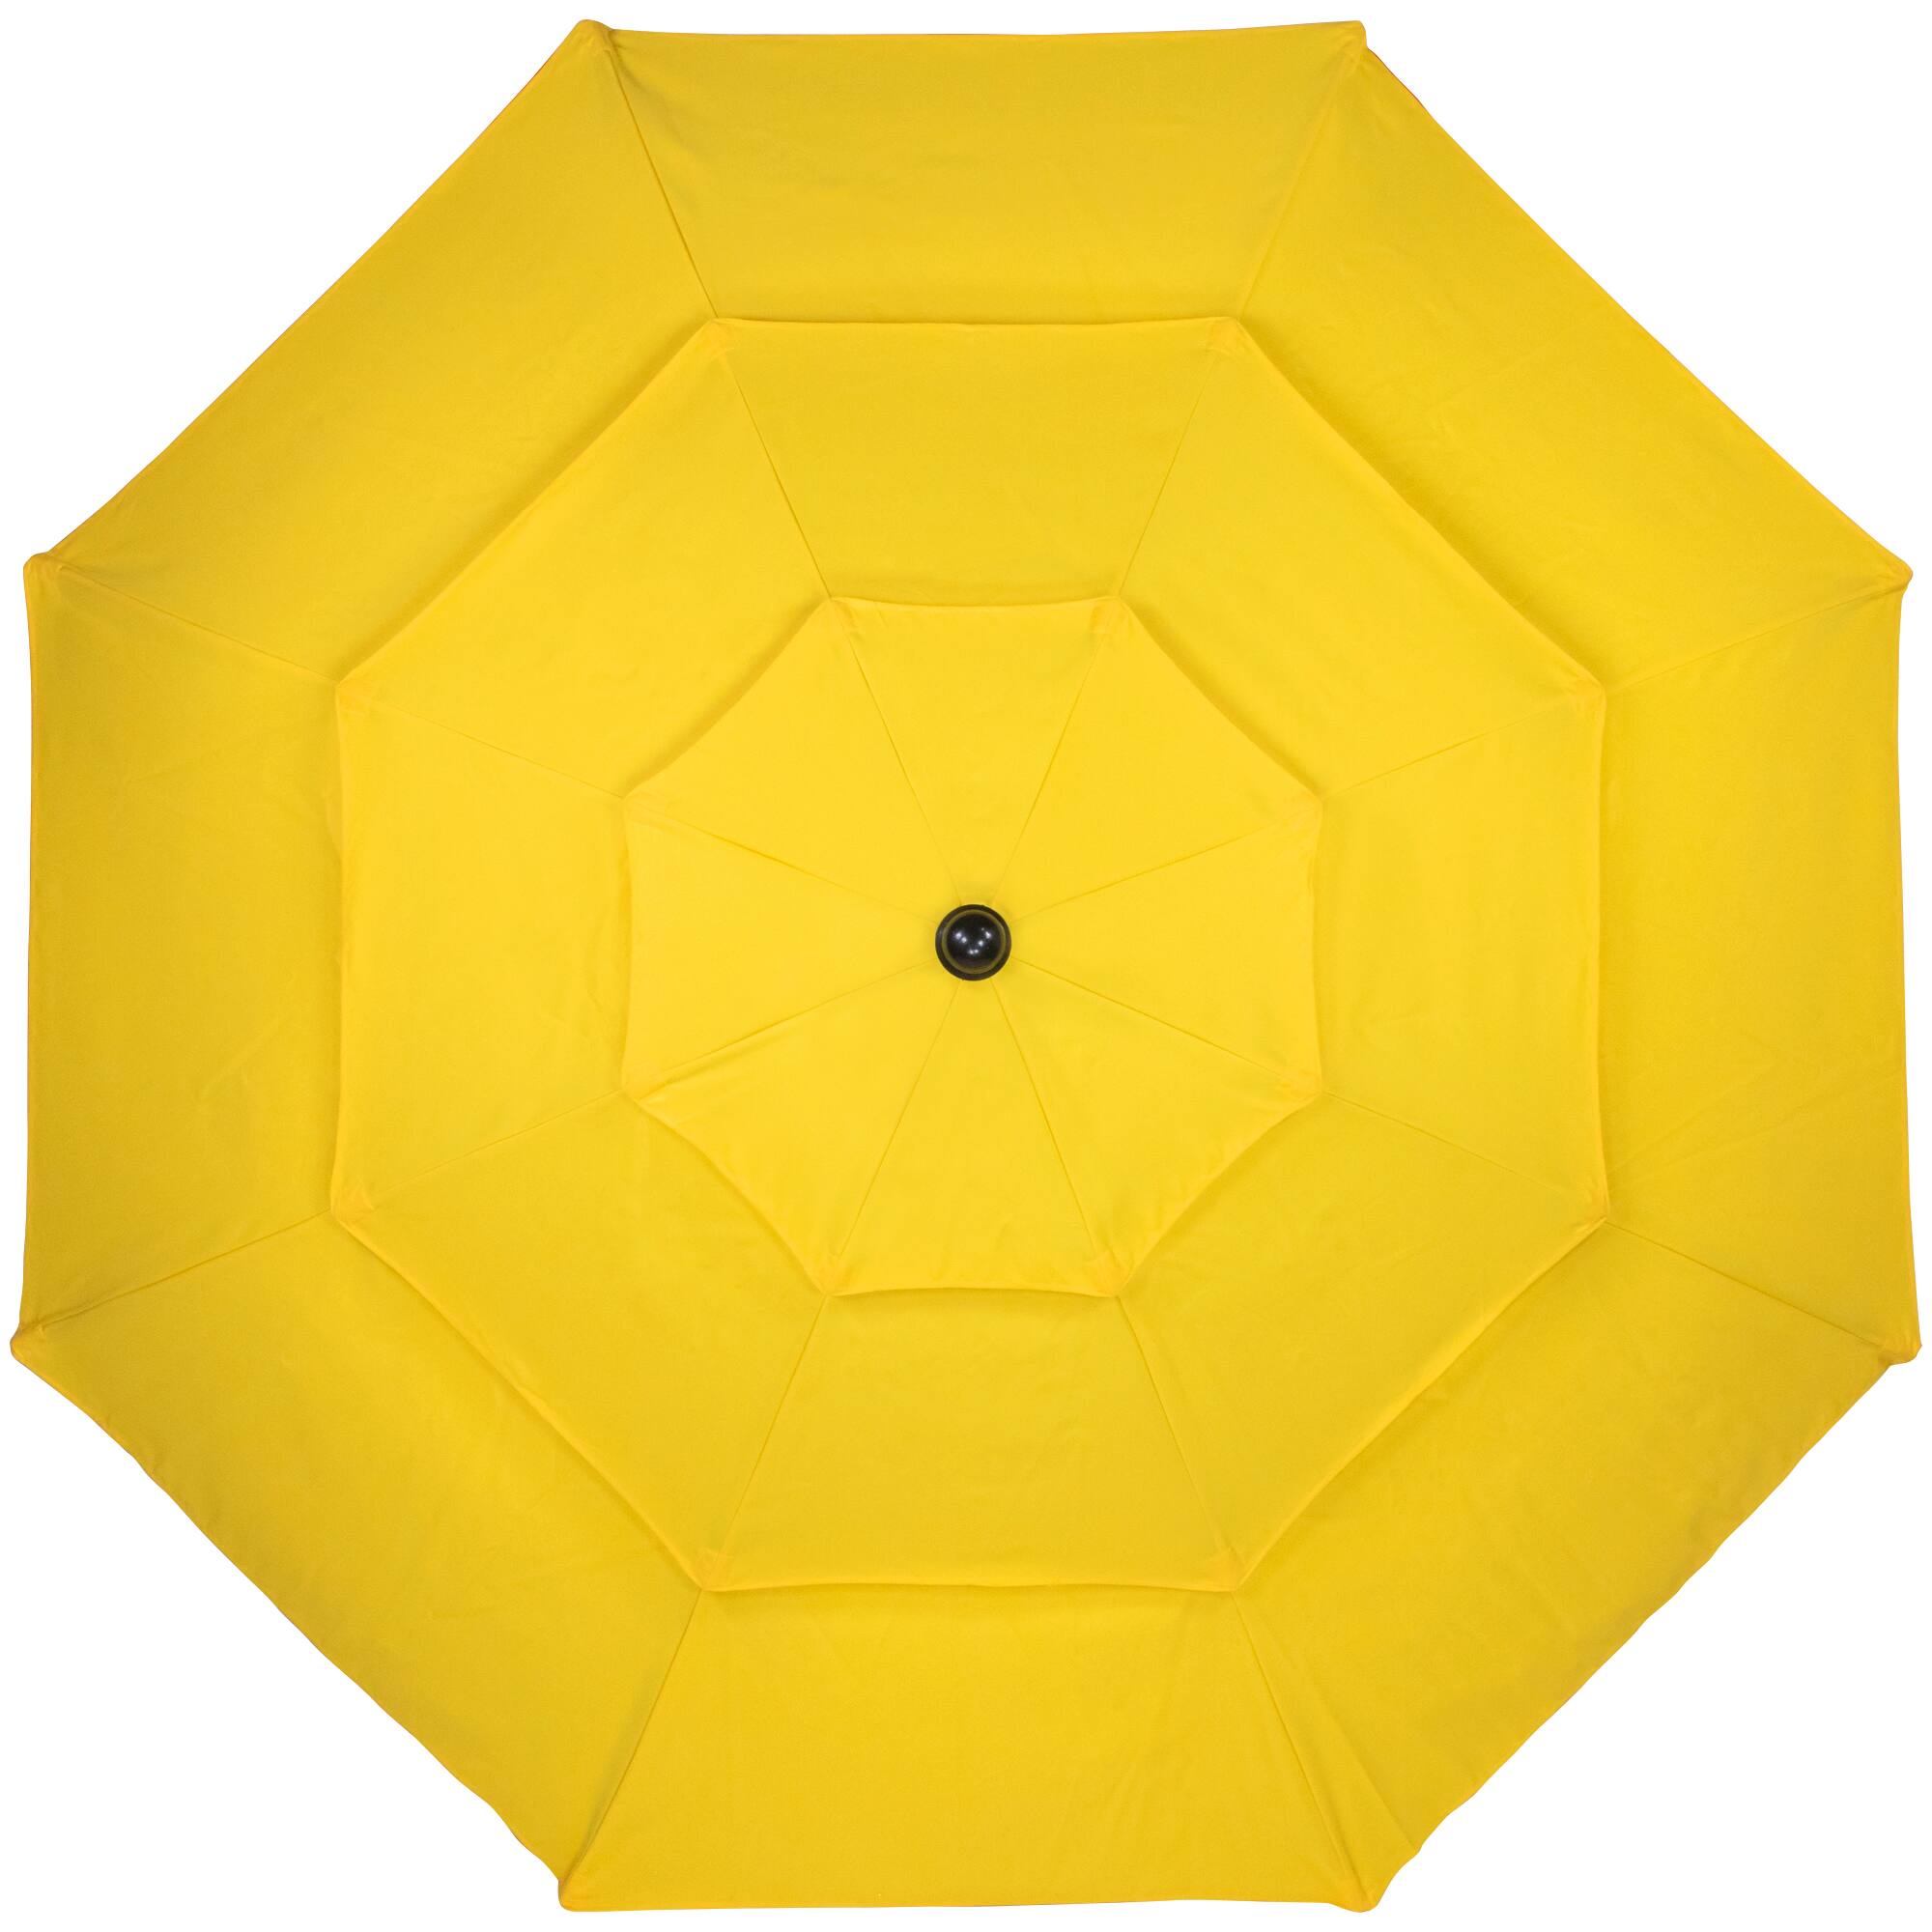 9.75ft. Outdoor Patio Market Umbrella with Hand Crank &#x26; Tilt